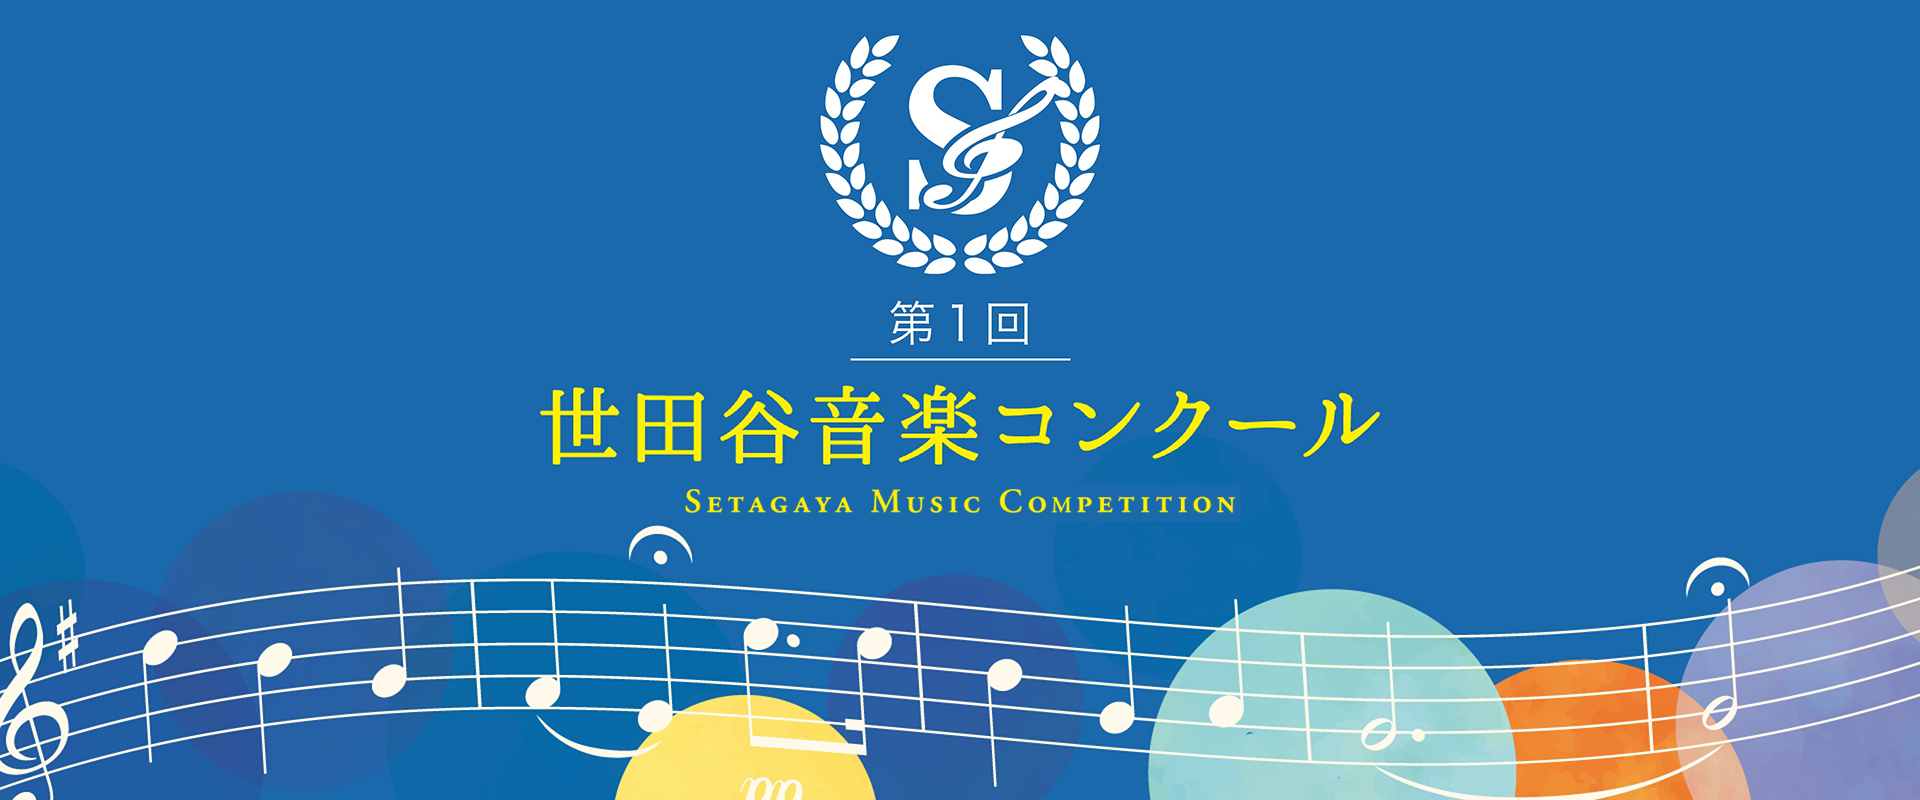 本選申込フォーム – 第1回 世田谷音楽コンクール – Setagaya Music Competition